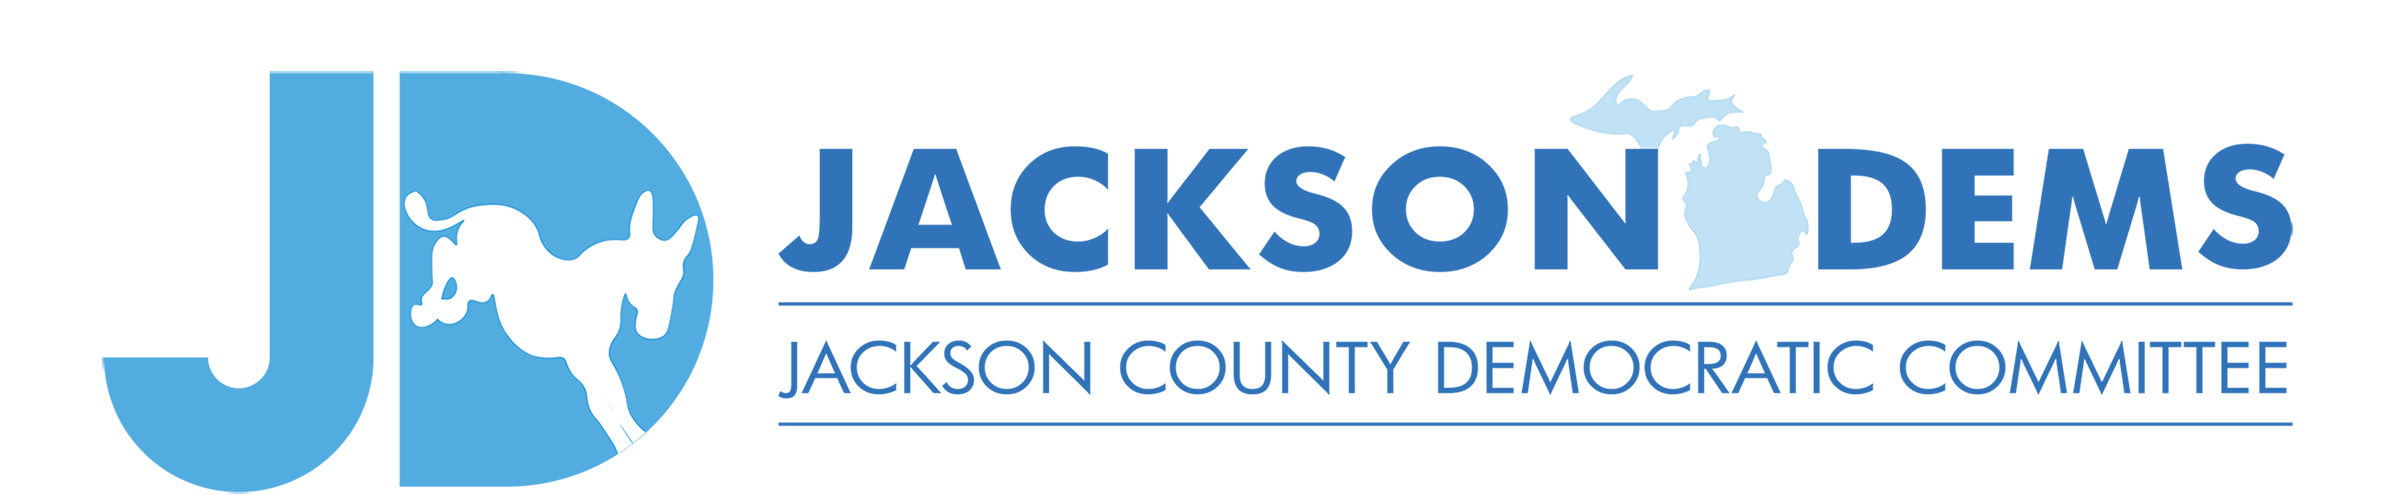 Jackson County Democratic Committee